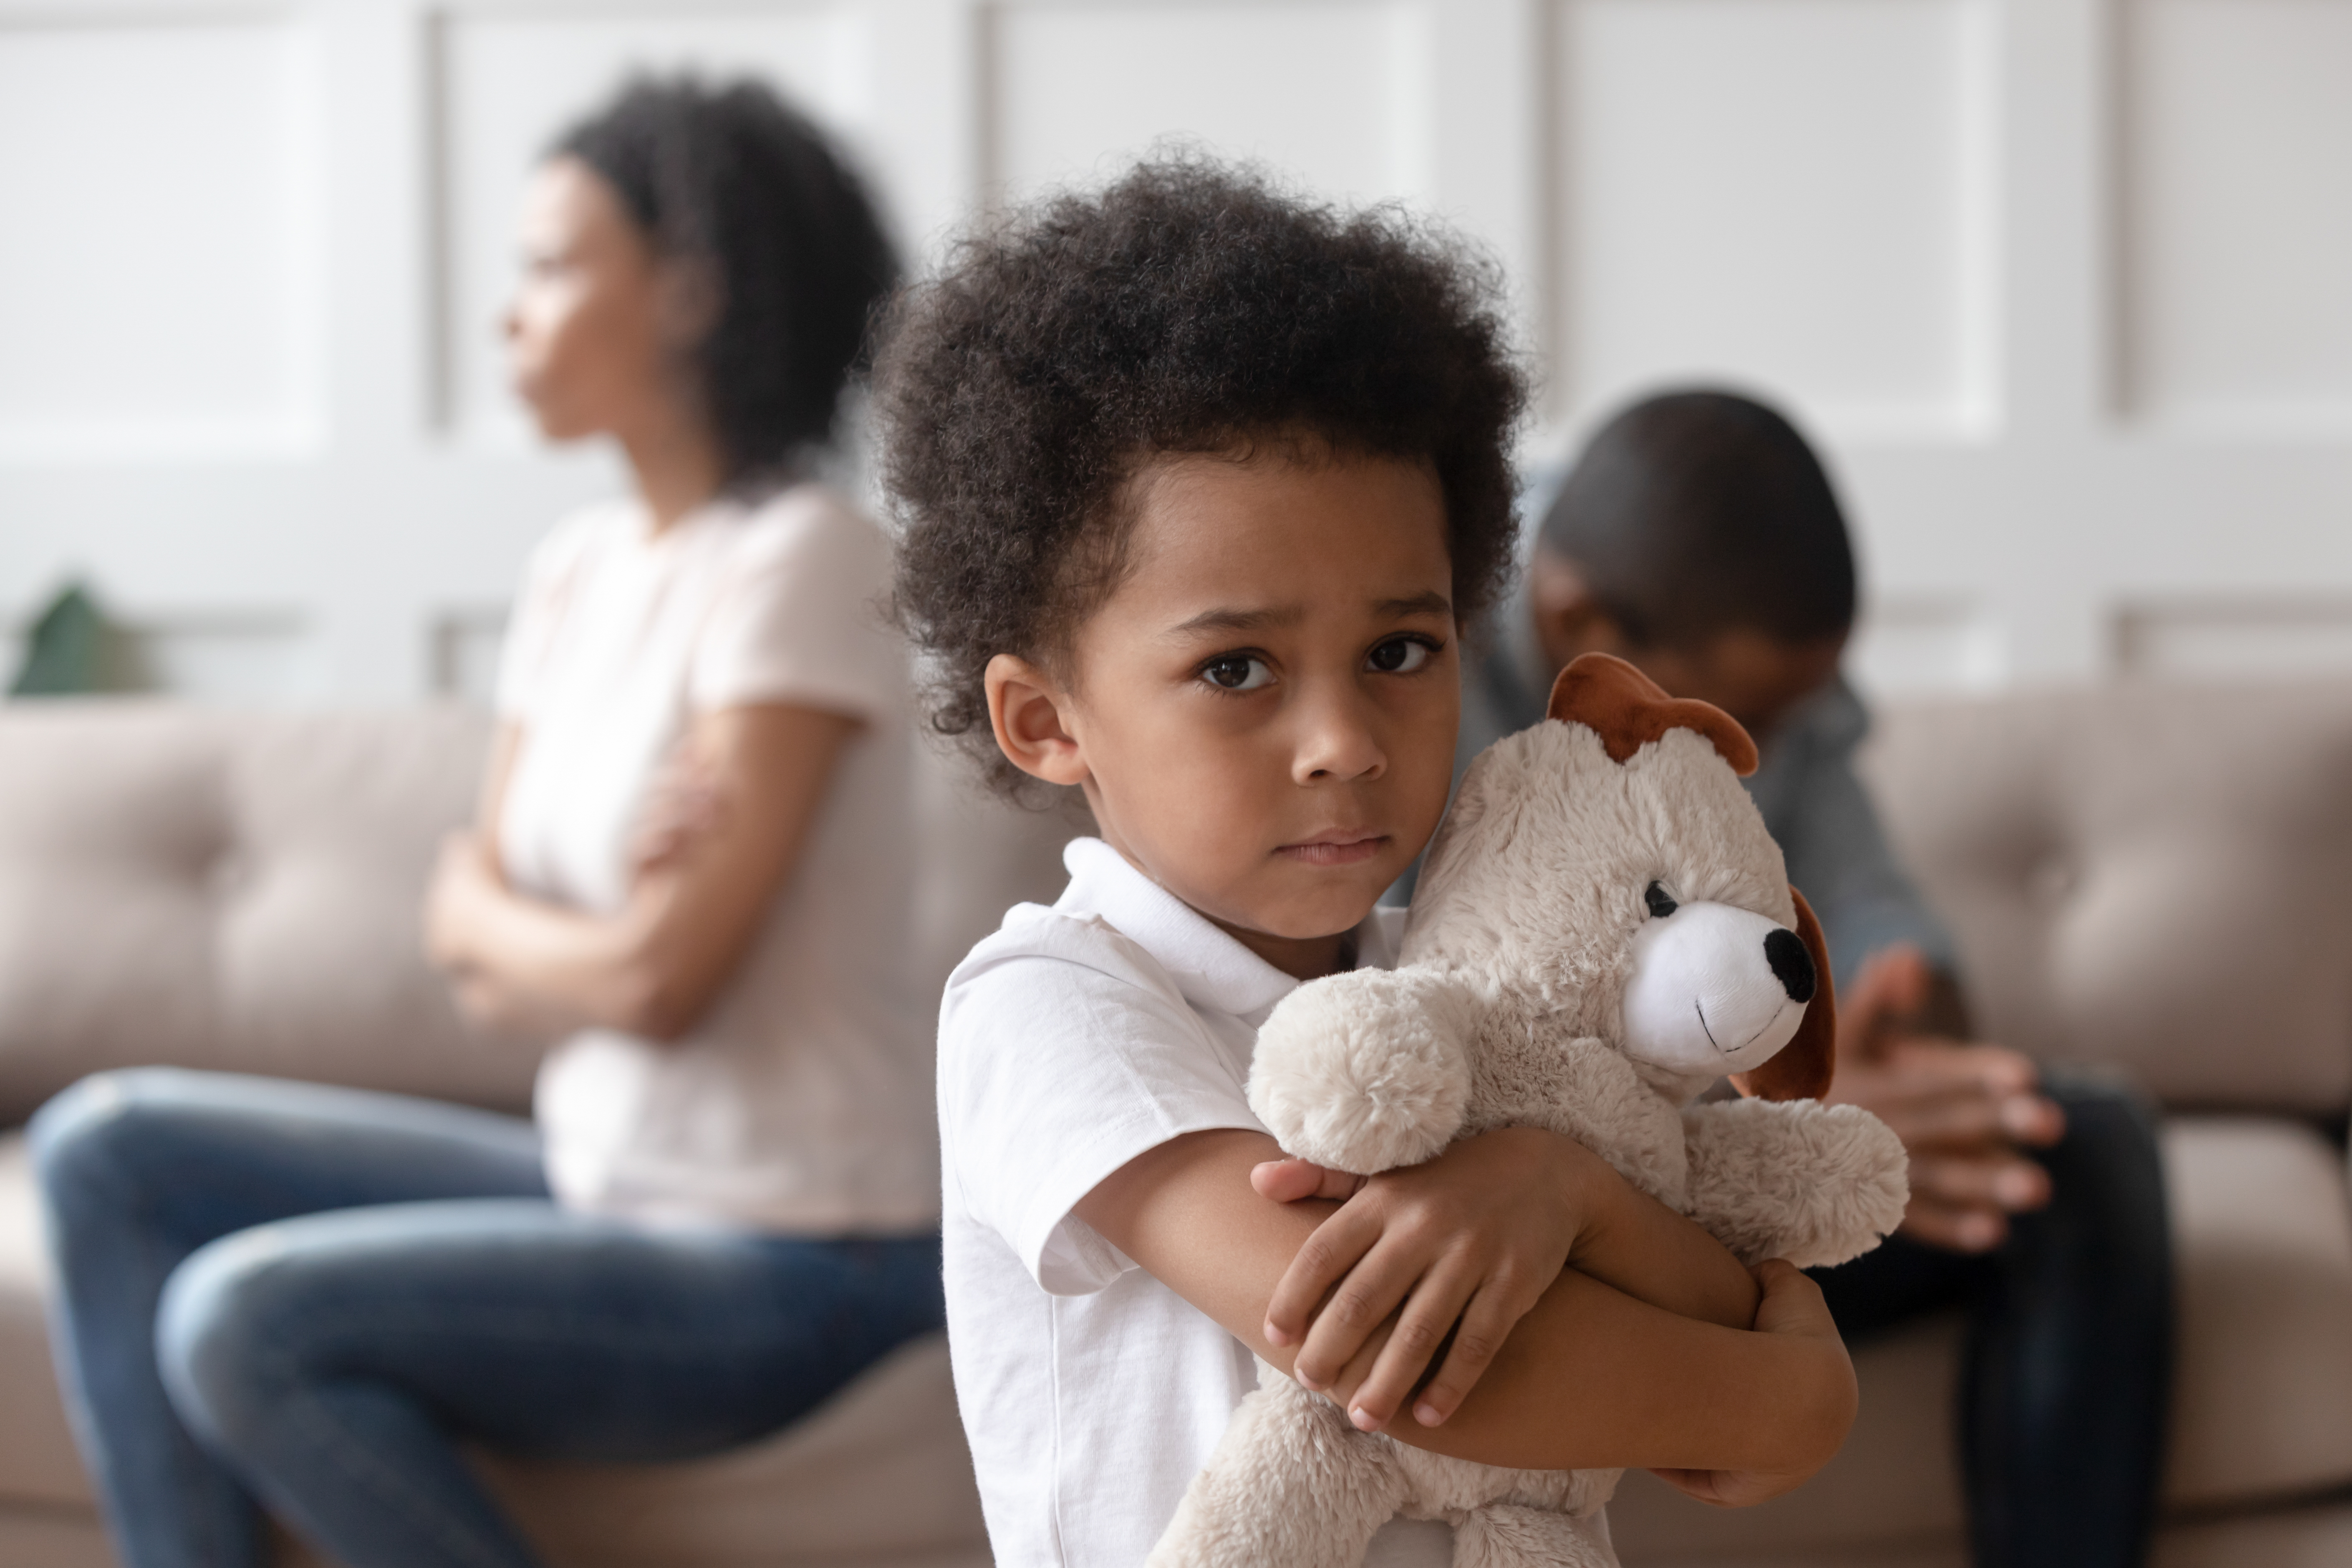 Ein trauriges Kind hält einen Teddybär, während sich im Hintergrund ein Mann und eine Frau den Rücken zuwenden.  | Quelle: Shutterstock